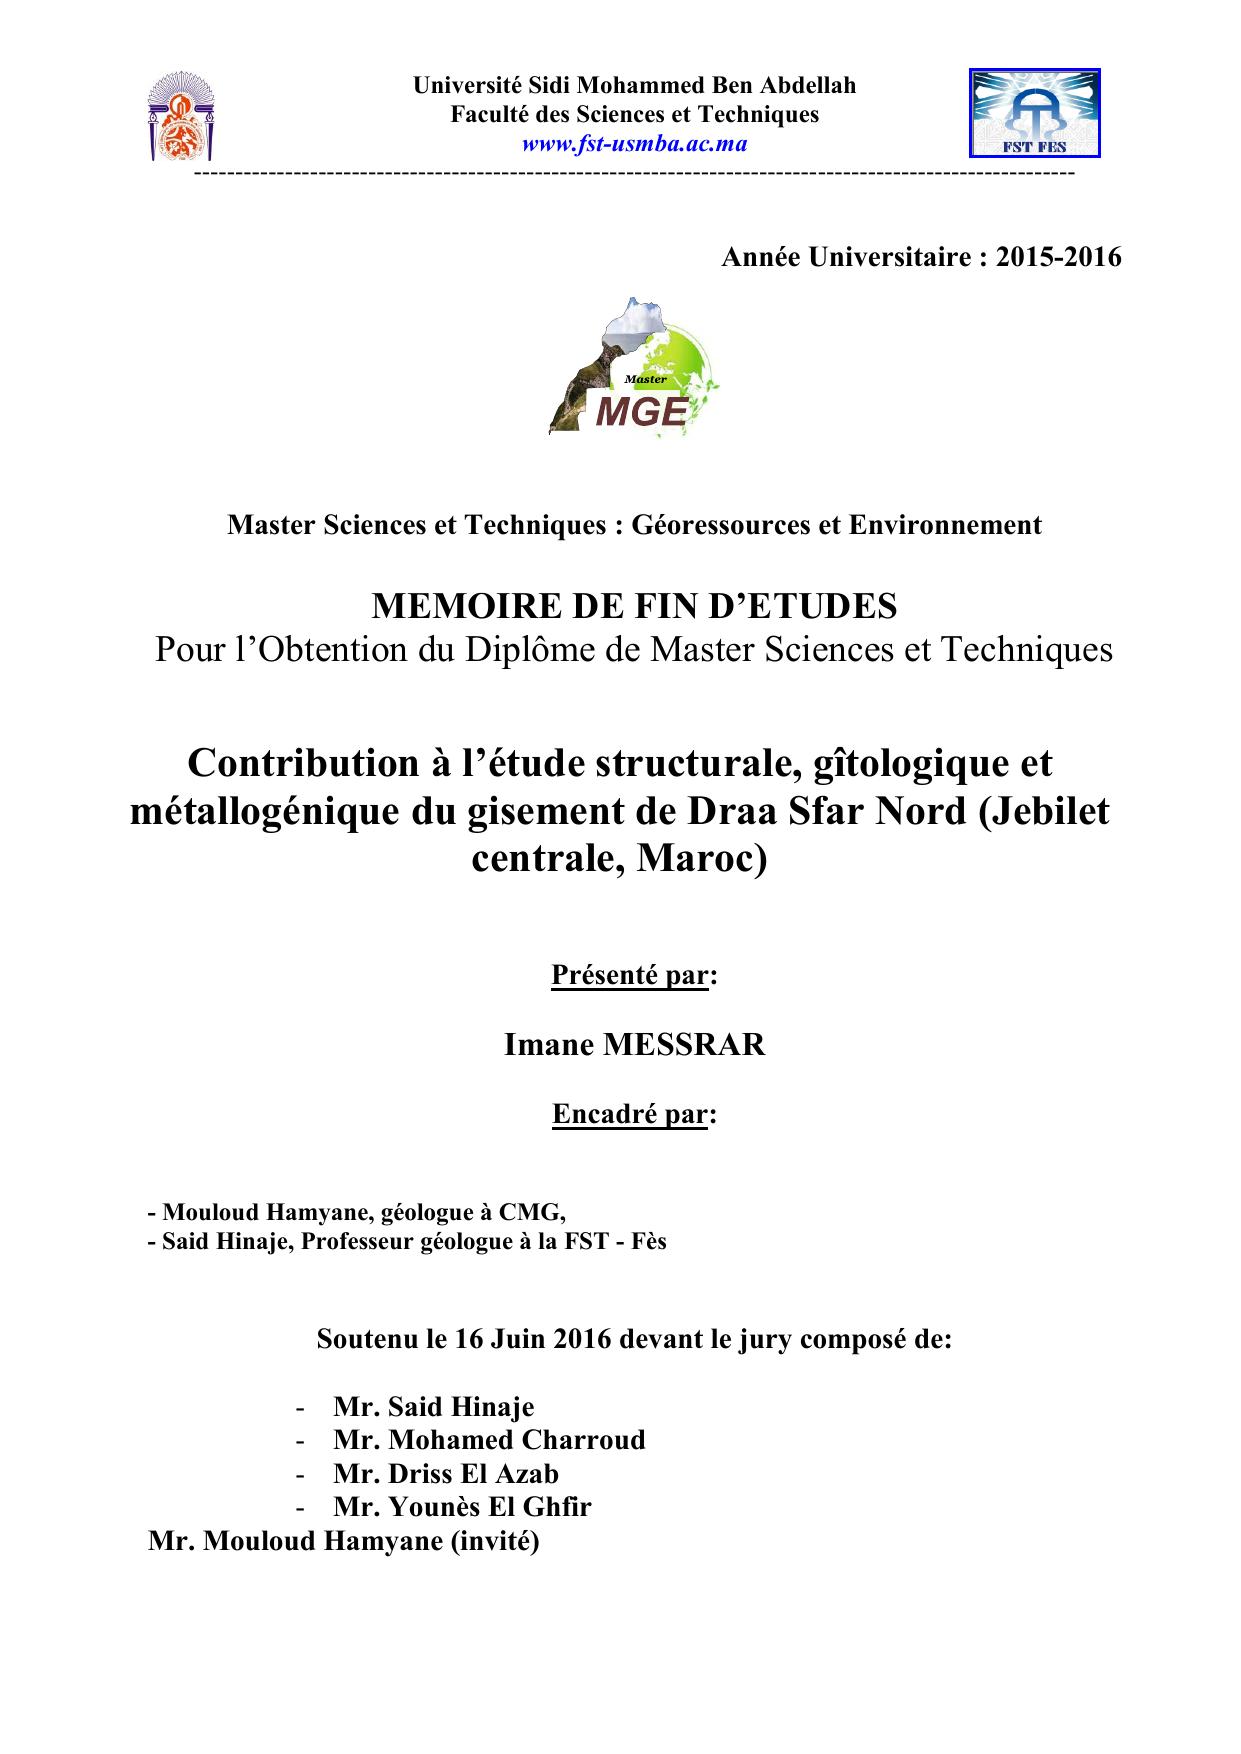 Contribution à l’étude structurale, gîtologique et métallogénique du gisement de Draa Sfar Nord (Jebilet centrale, Maroc)